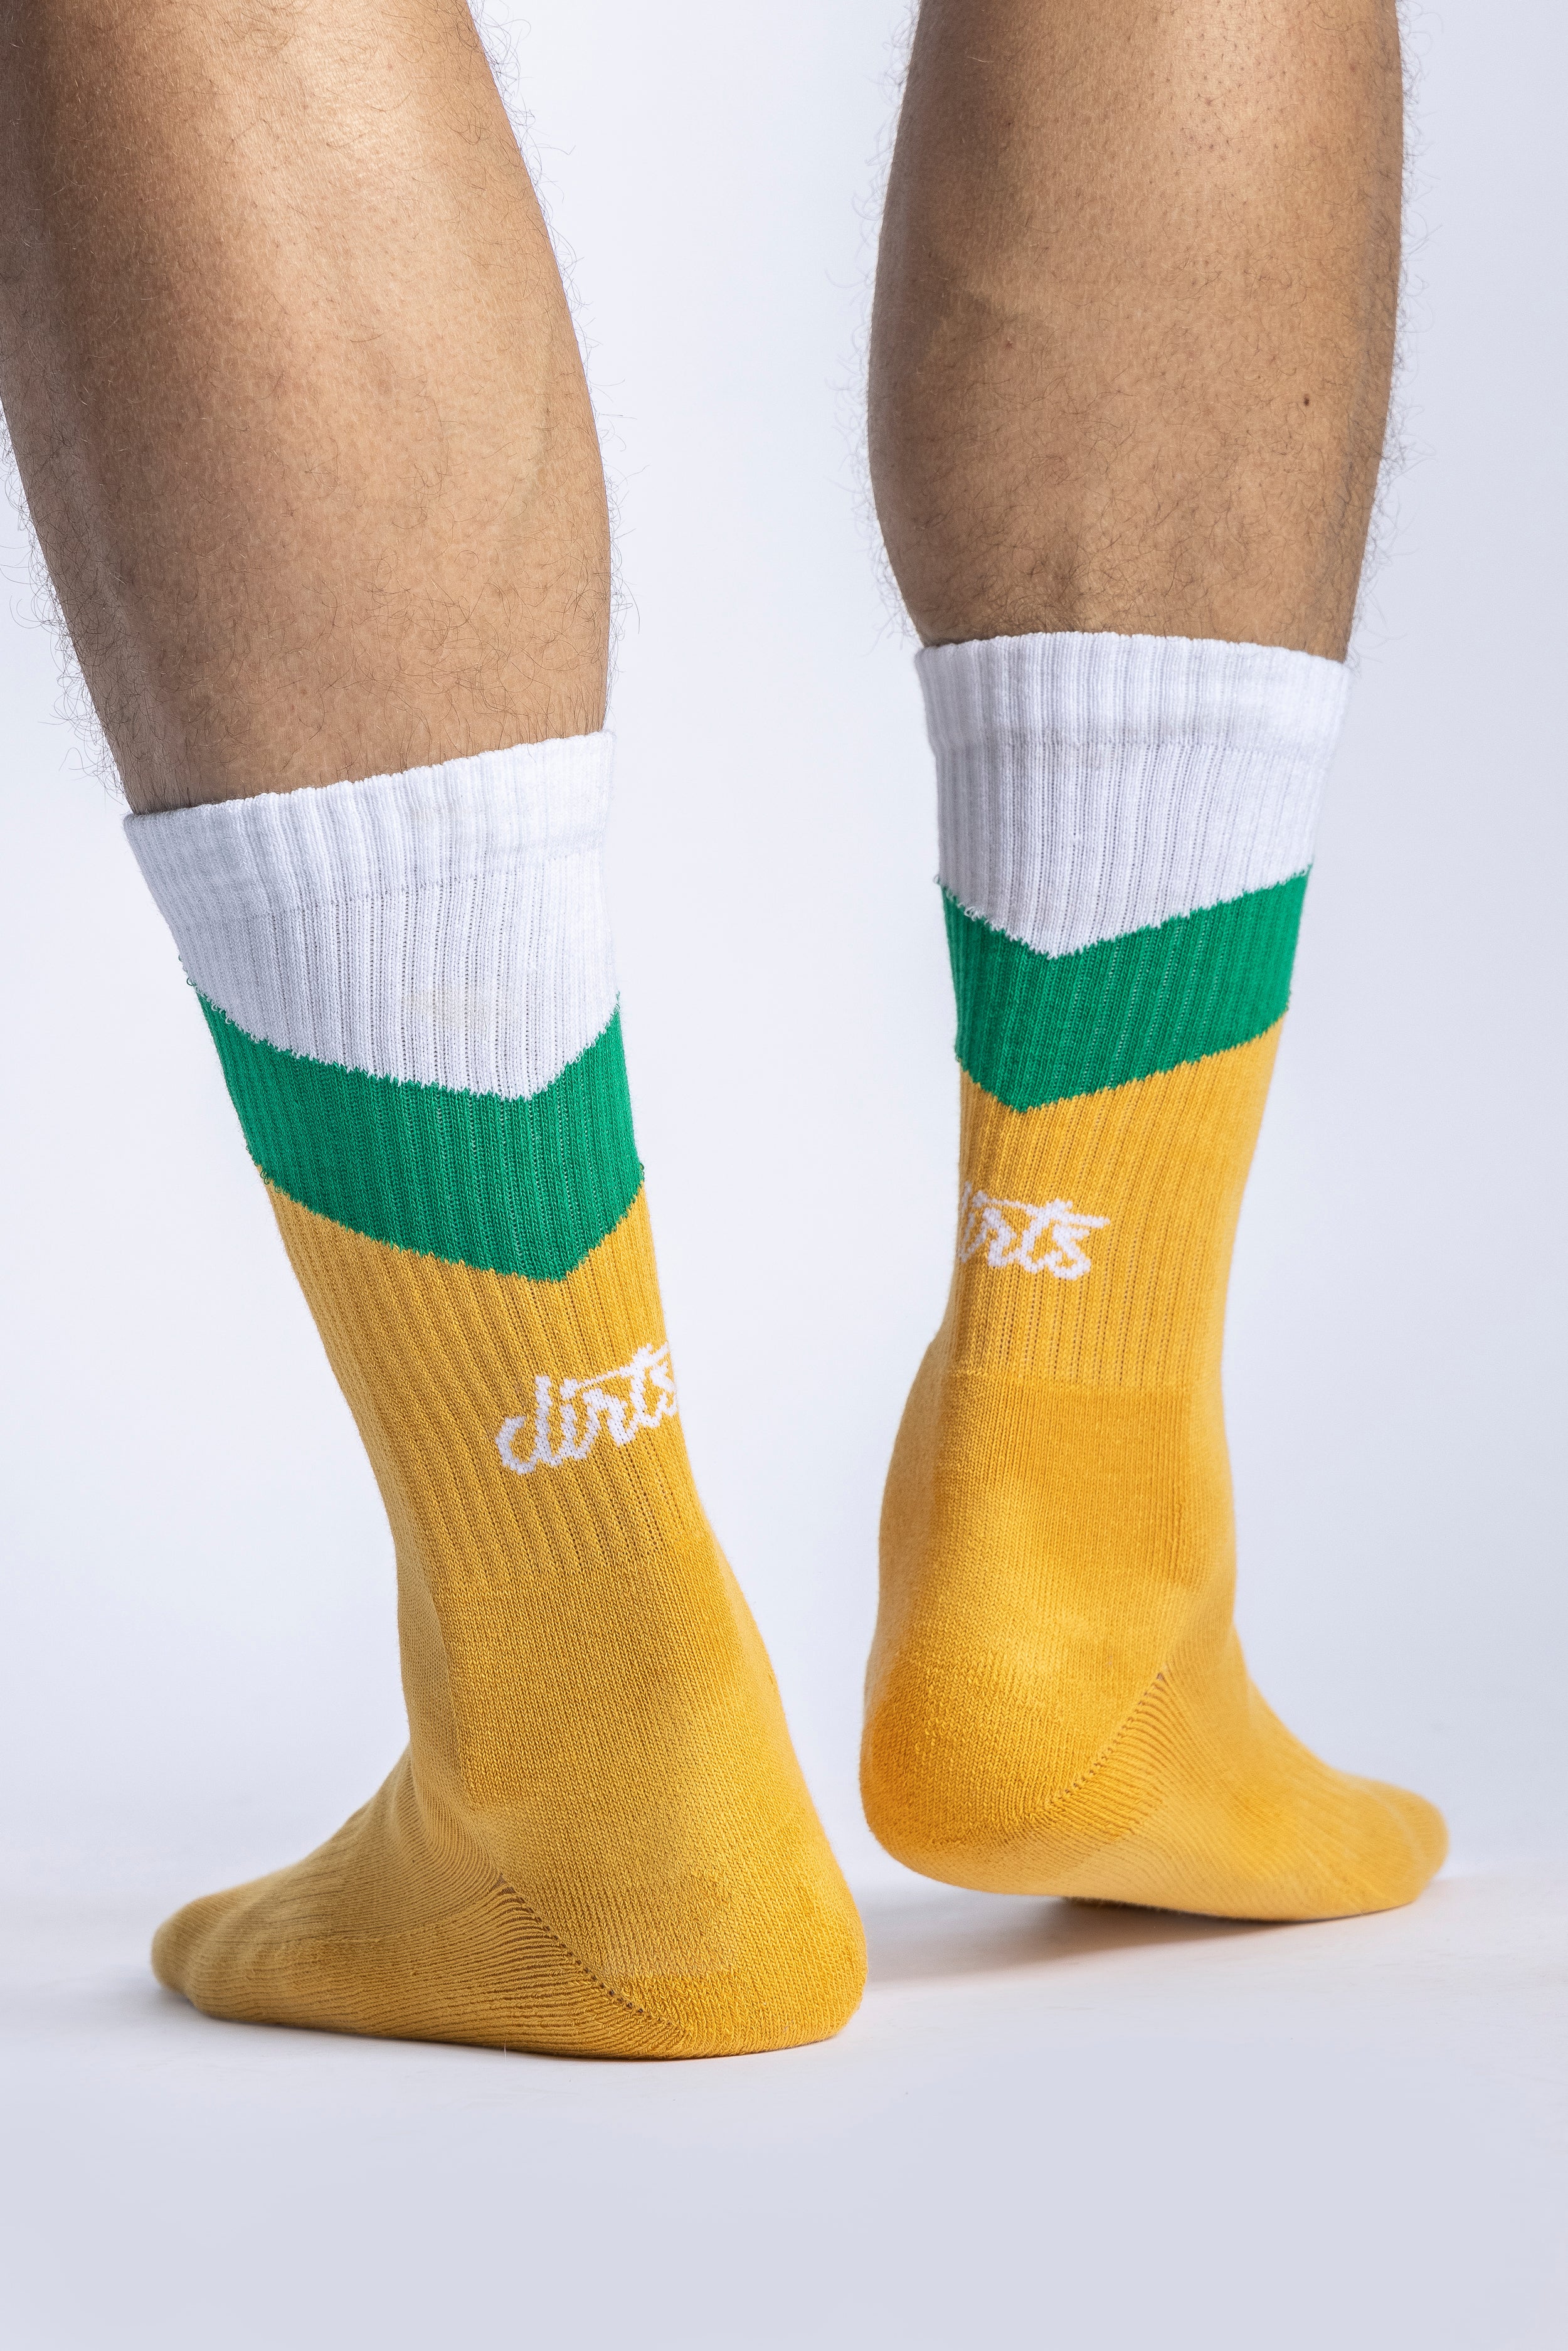 Zig Zag Socks Yellow Green White 4